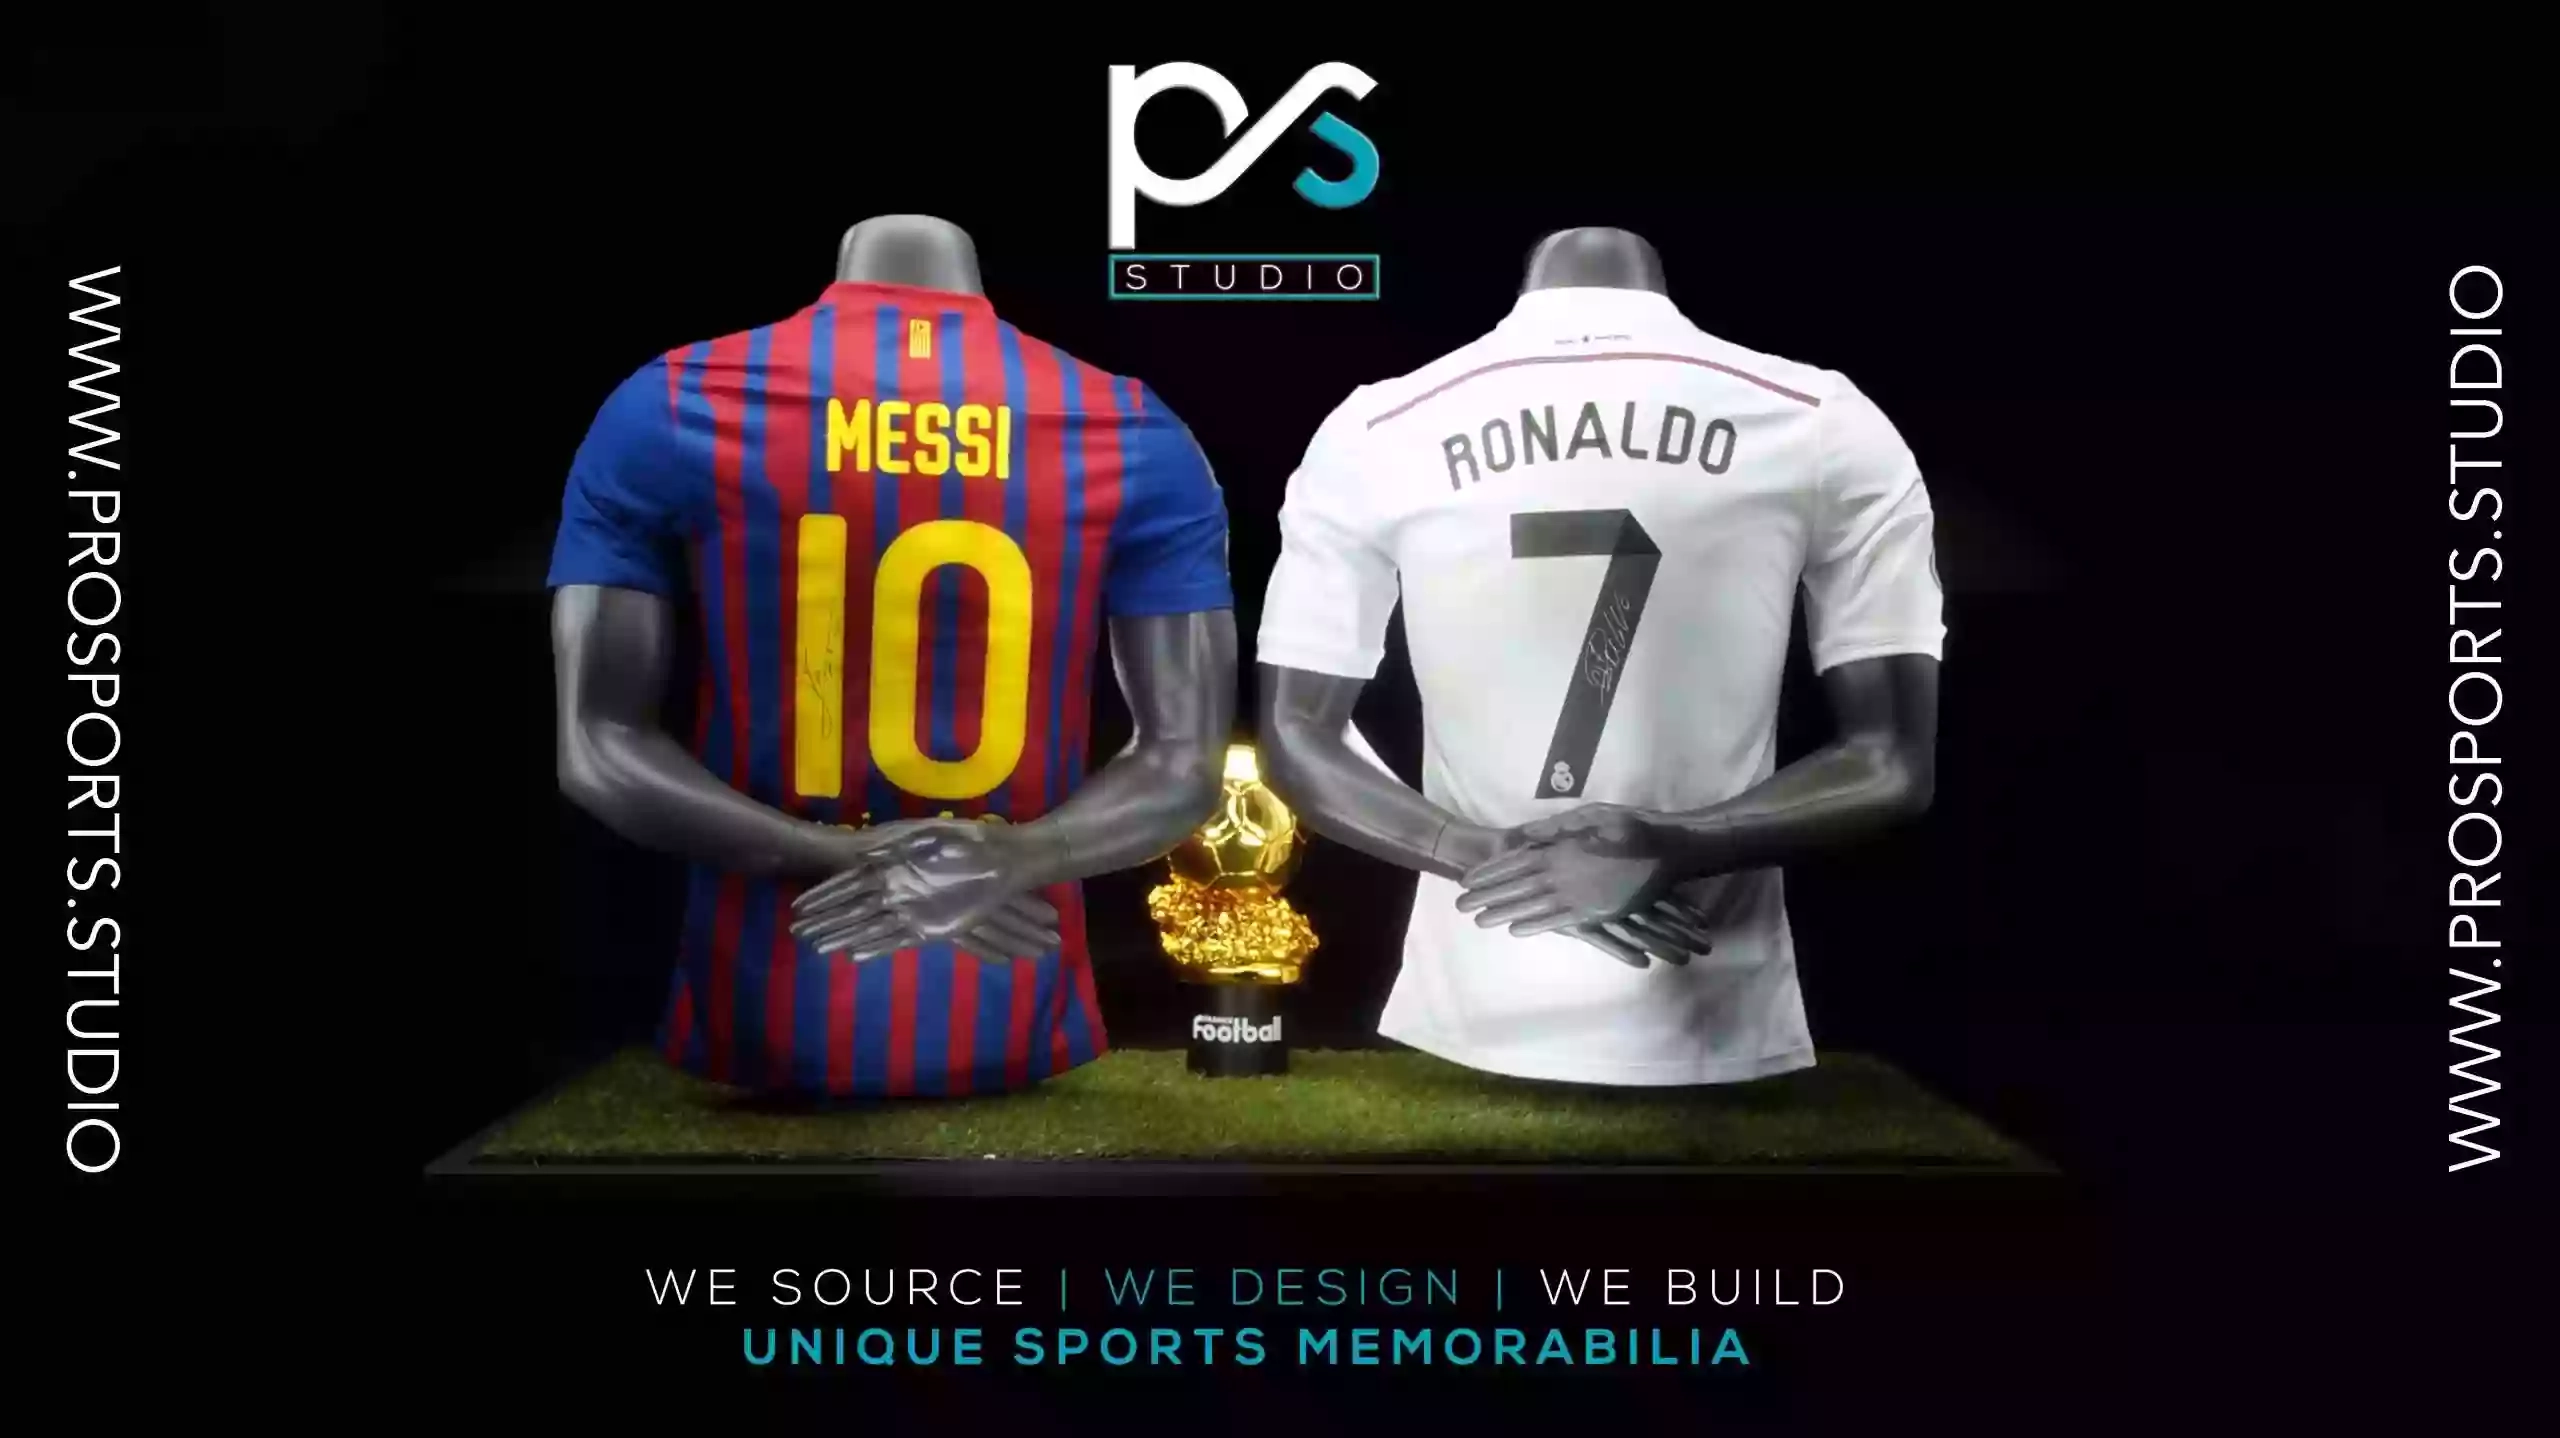 PRO Sports Studio | We Source, Design & Build Unique Sports Memorabilia